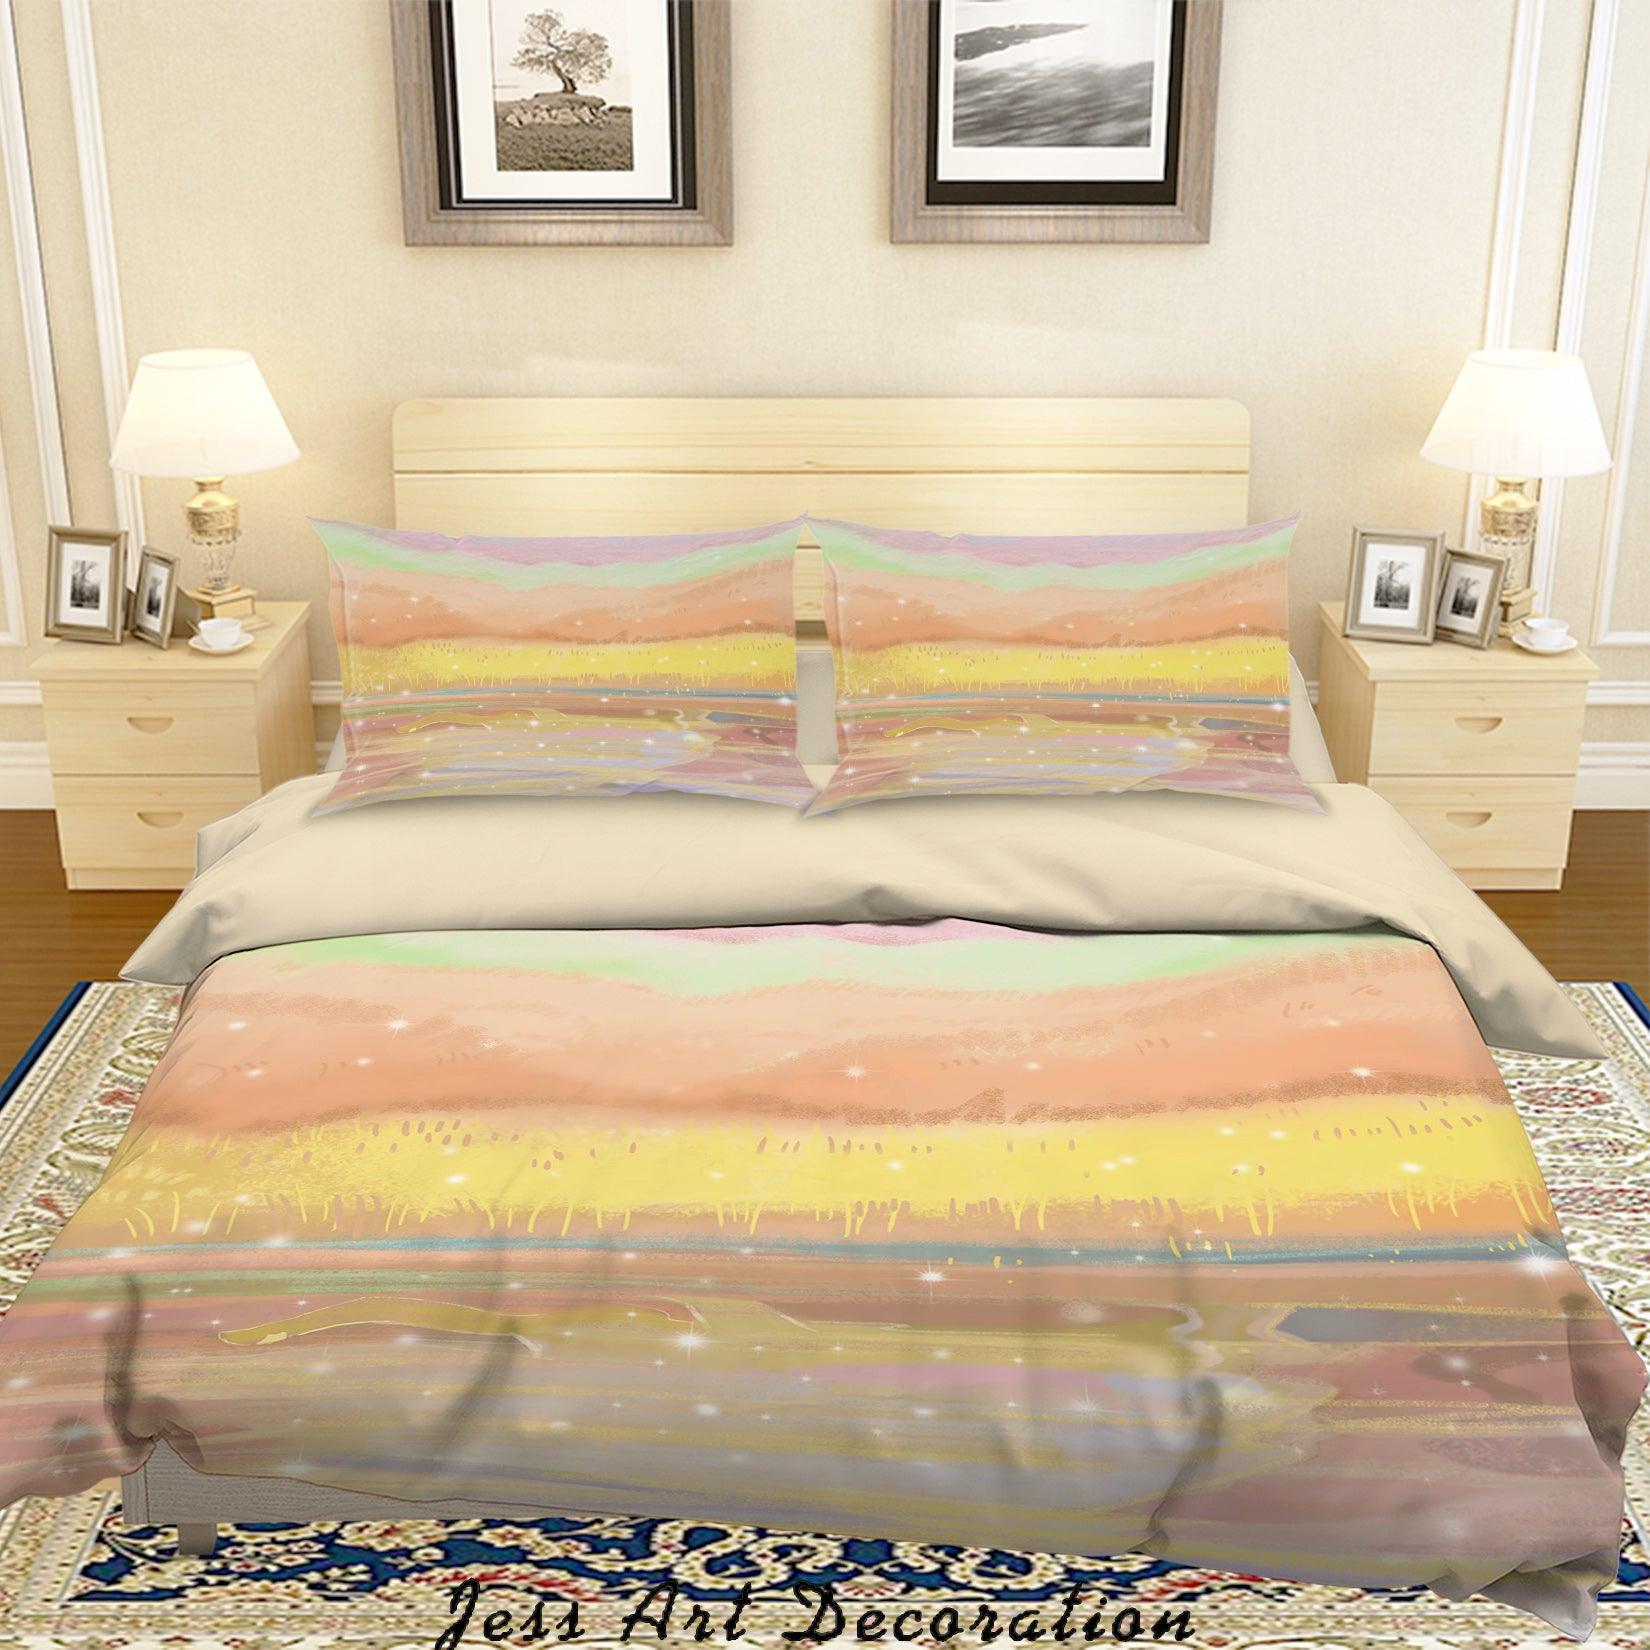 3D Wheat Field Landscape Painting Quilt Cover Set Bedding Set Duvet Cover Pillowcases A484 LQH- Jess Art Decoration